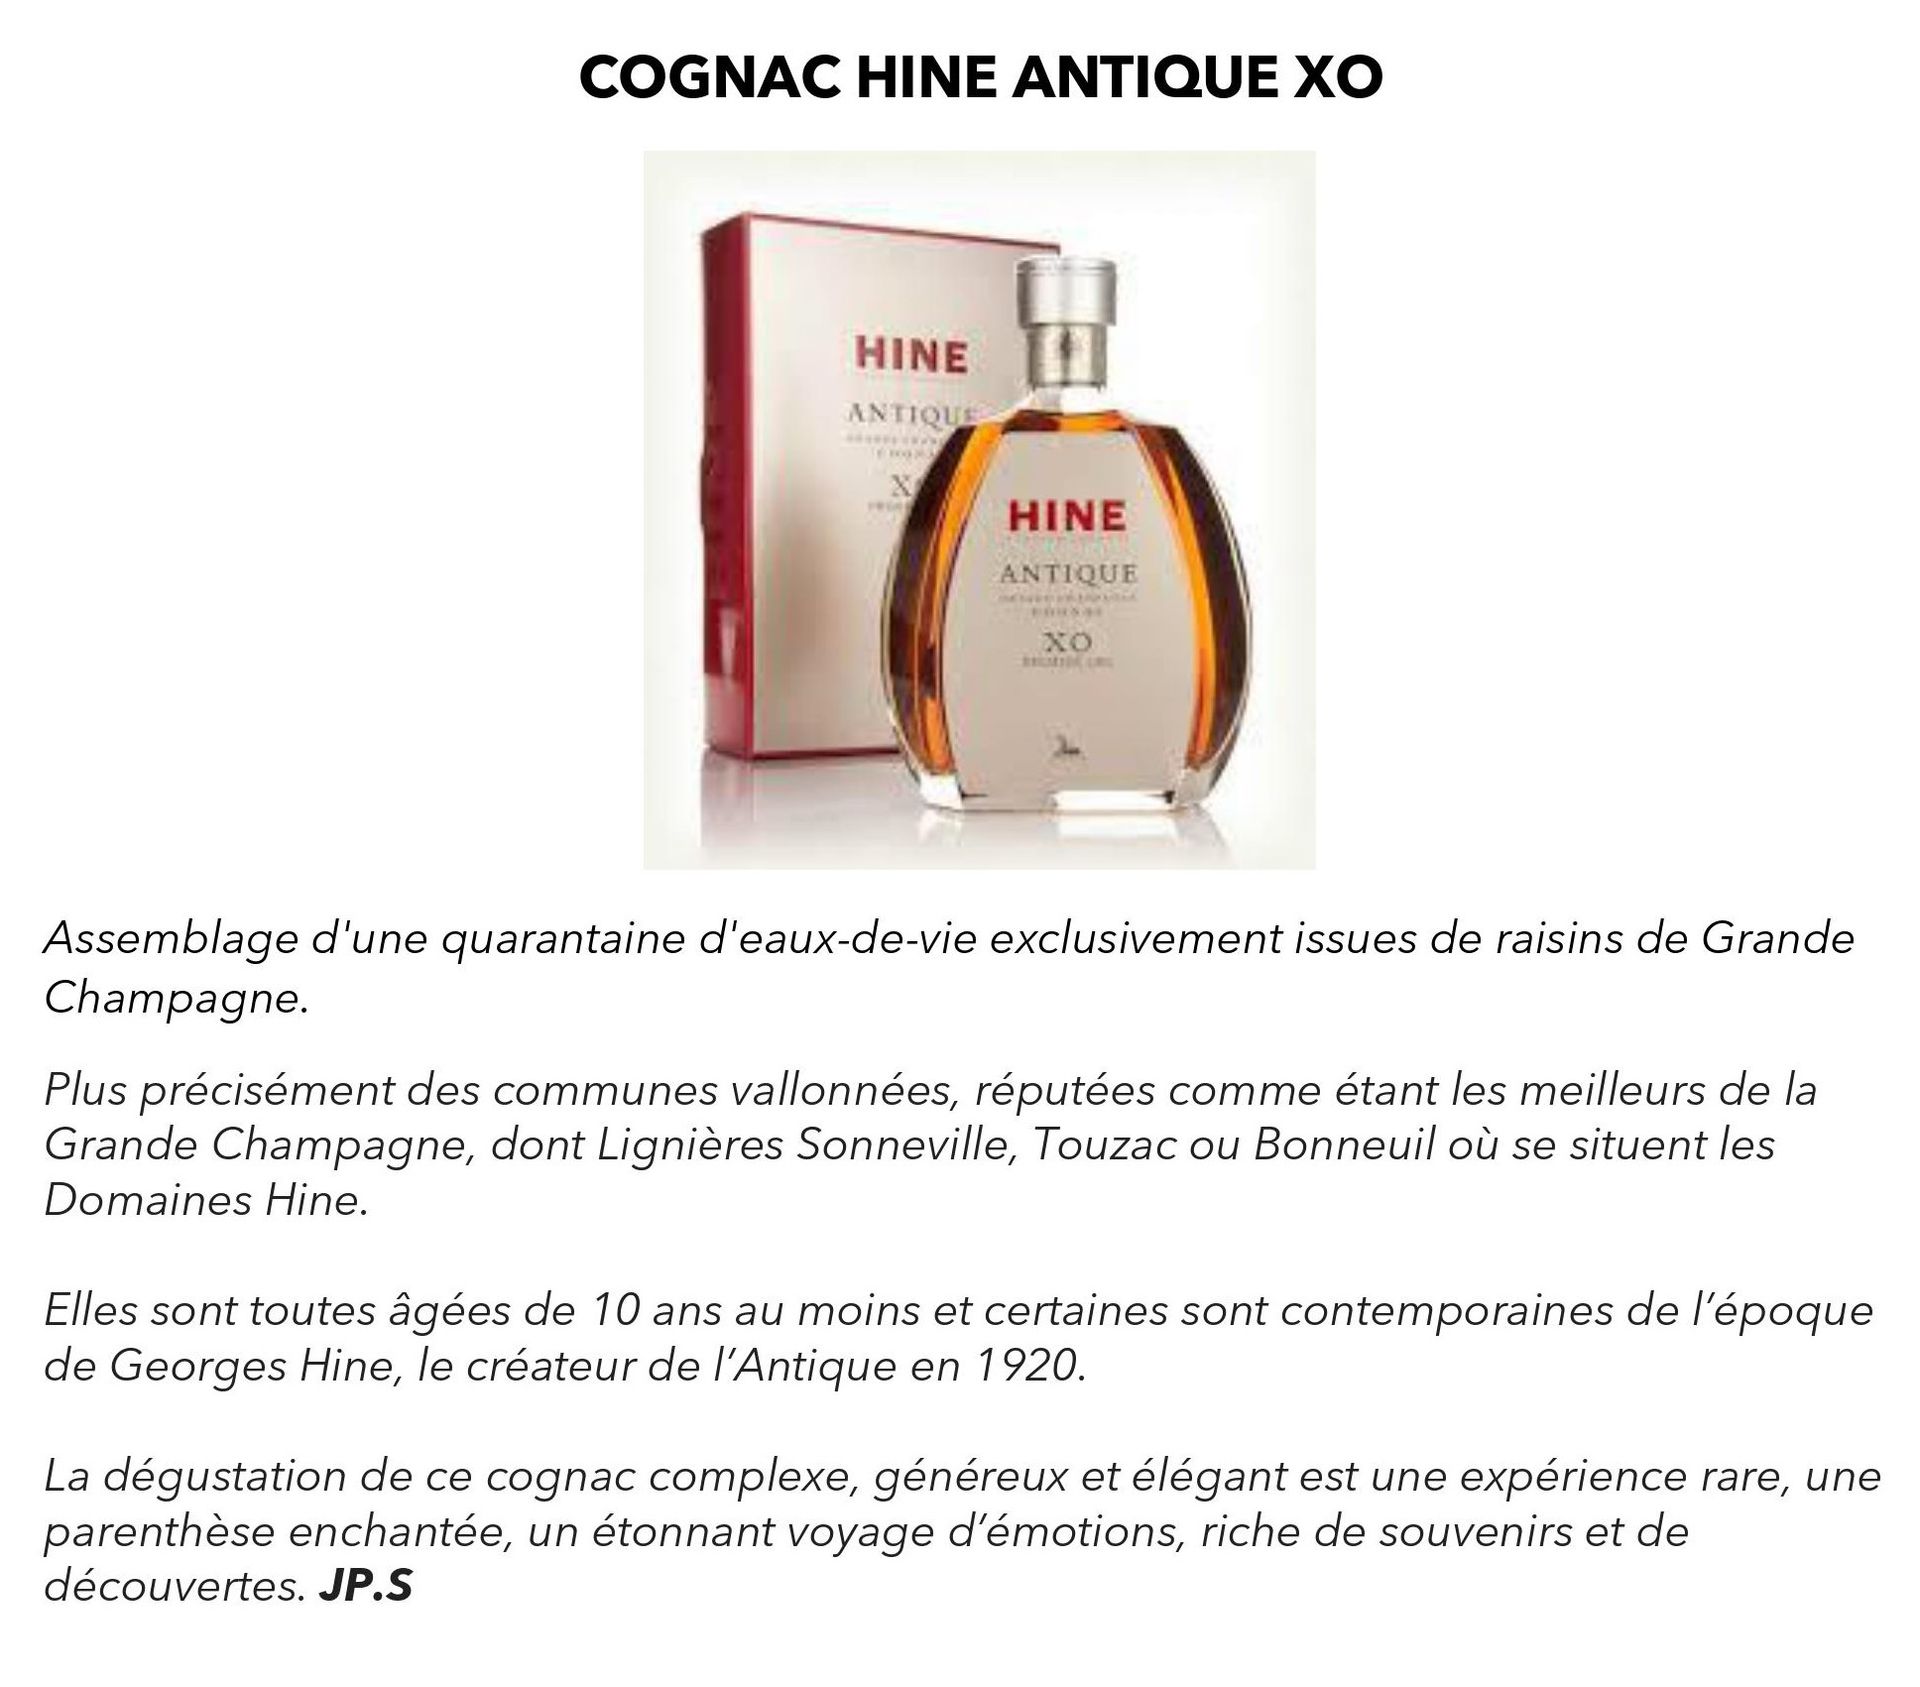 Cognac Hine Antique XO mise à prix 195€